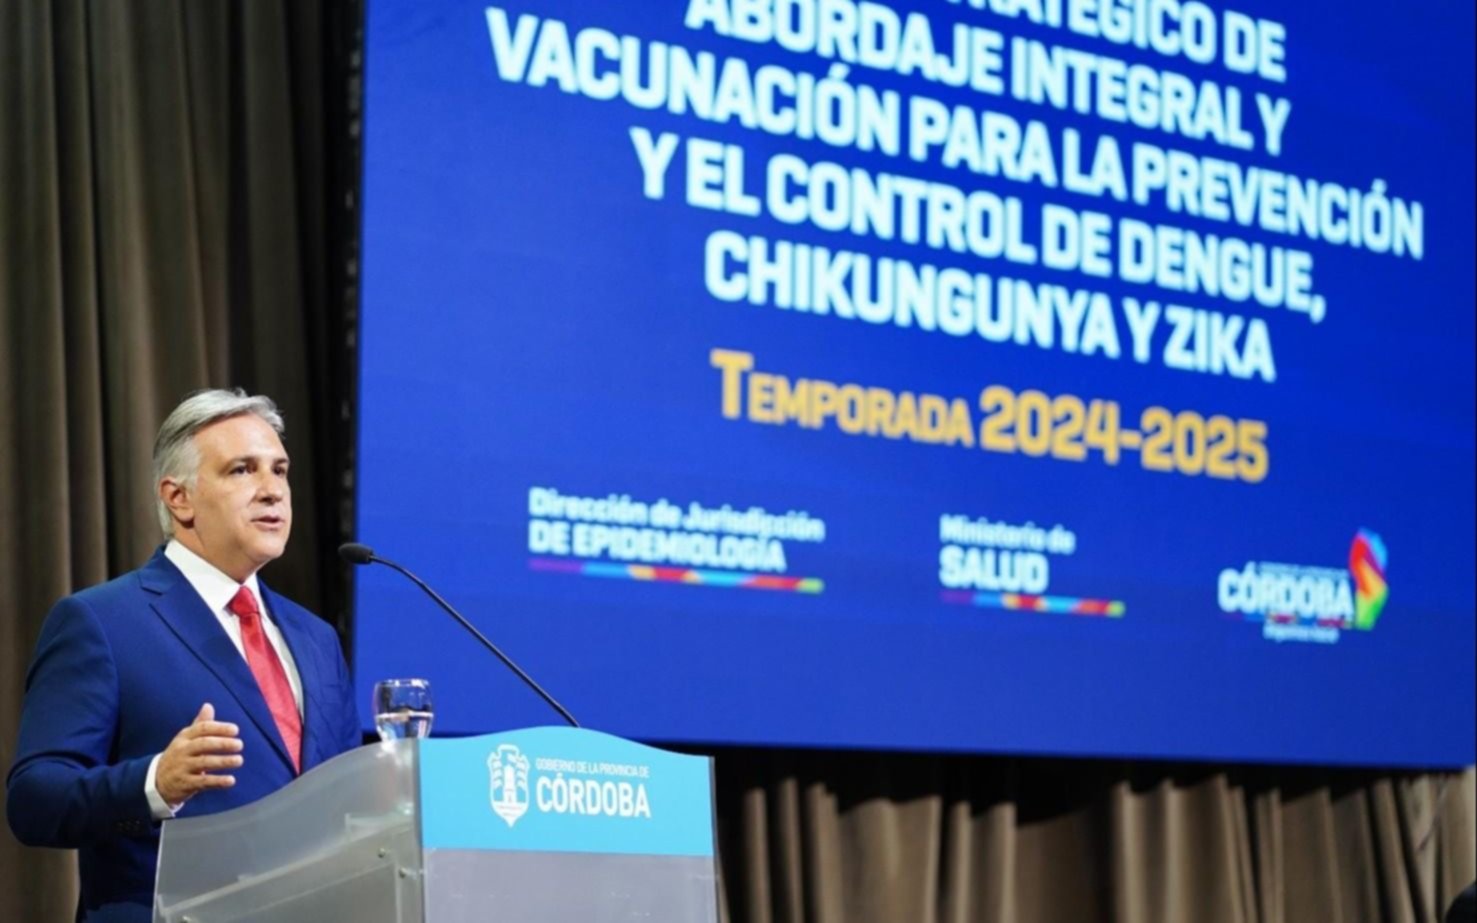 Córdoba lanzó el plan de Vacunación de dengue, chikungunya y zika